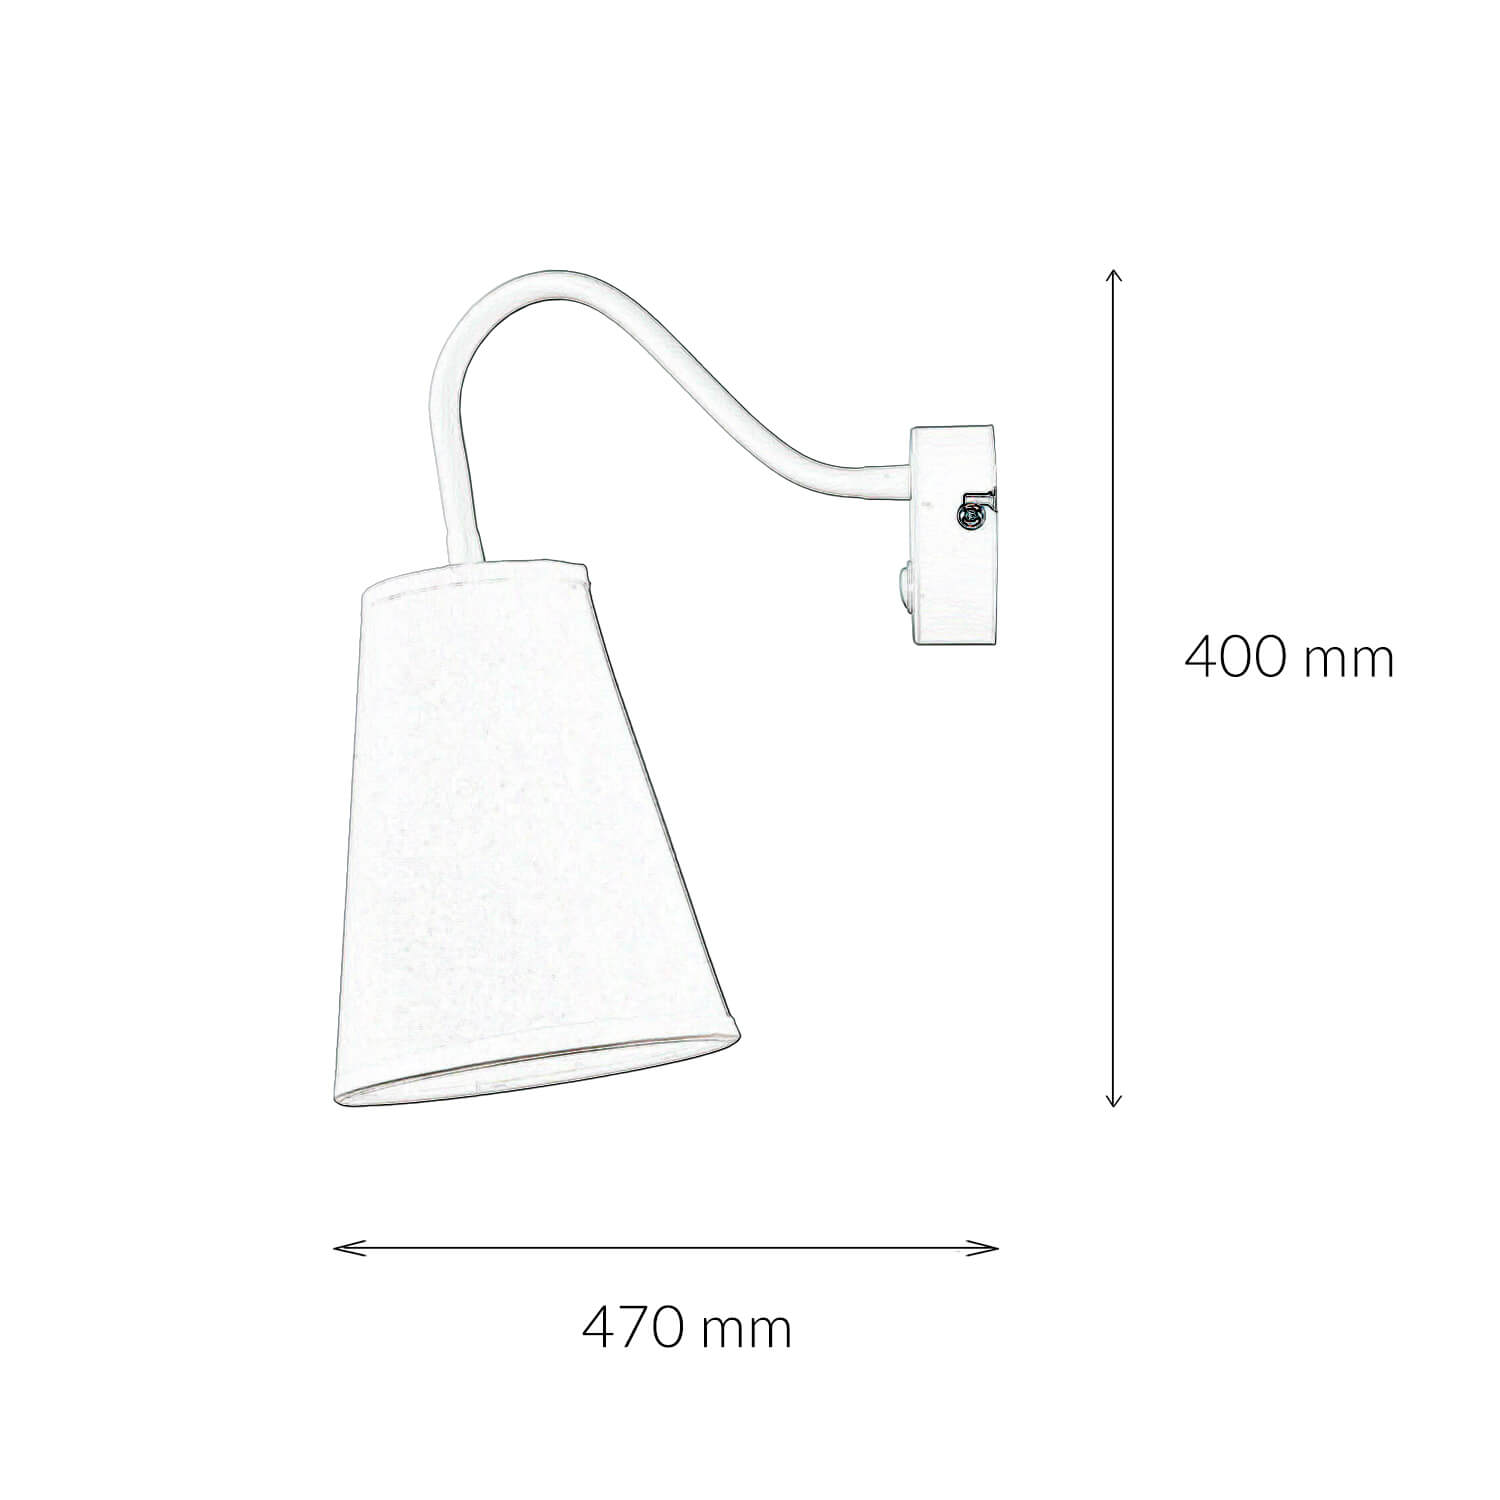 Verstellbare Wandlampe Weiß Ø13cm mit Schalter